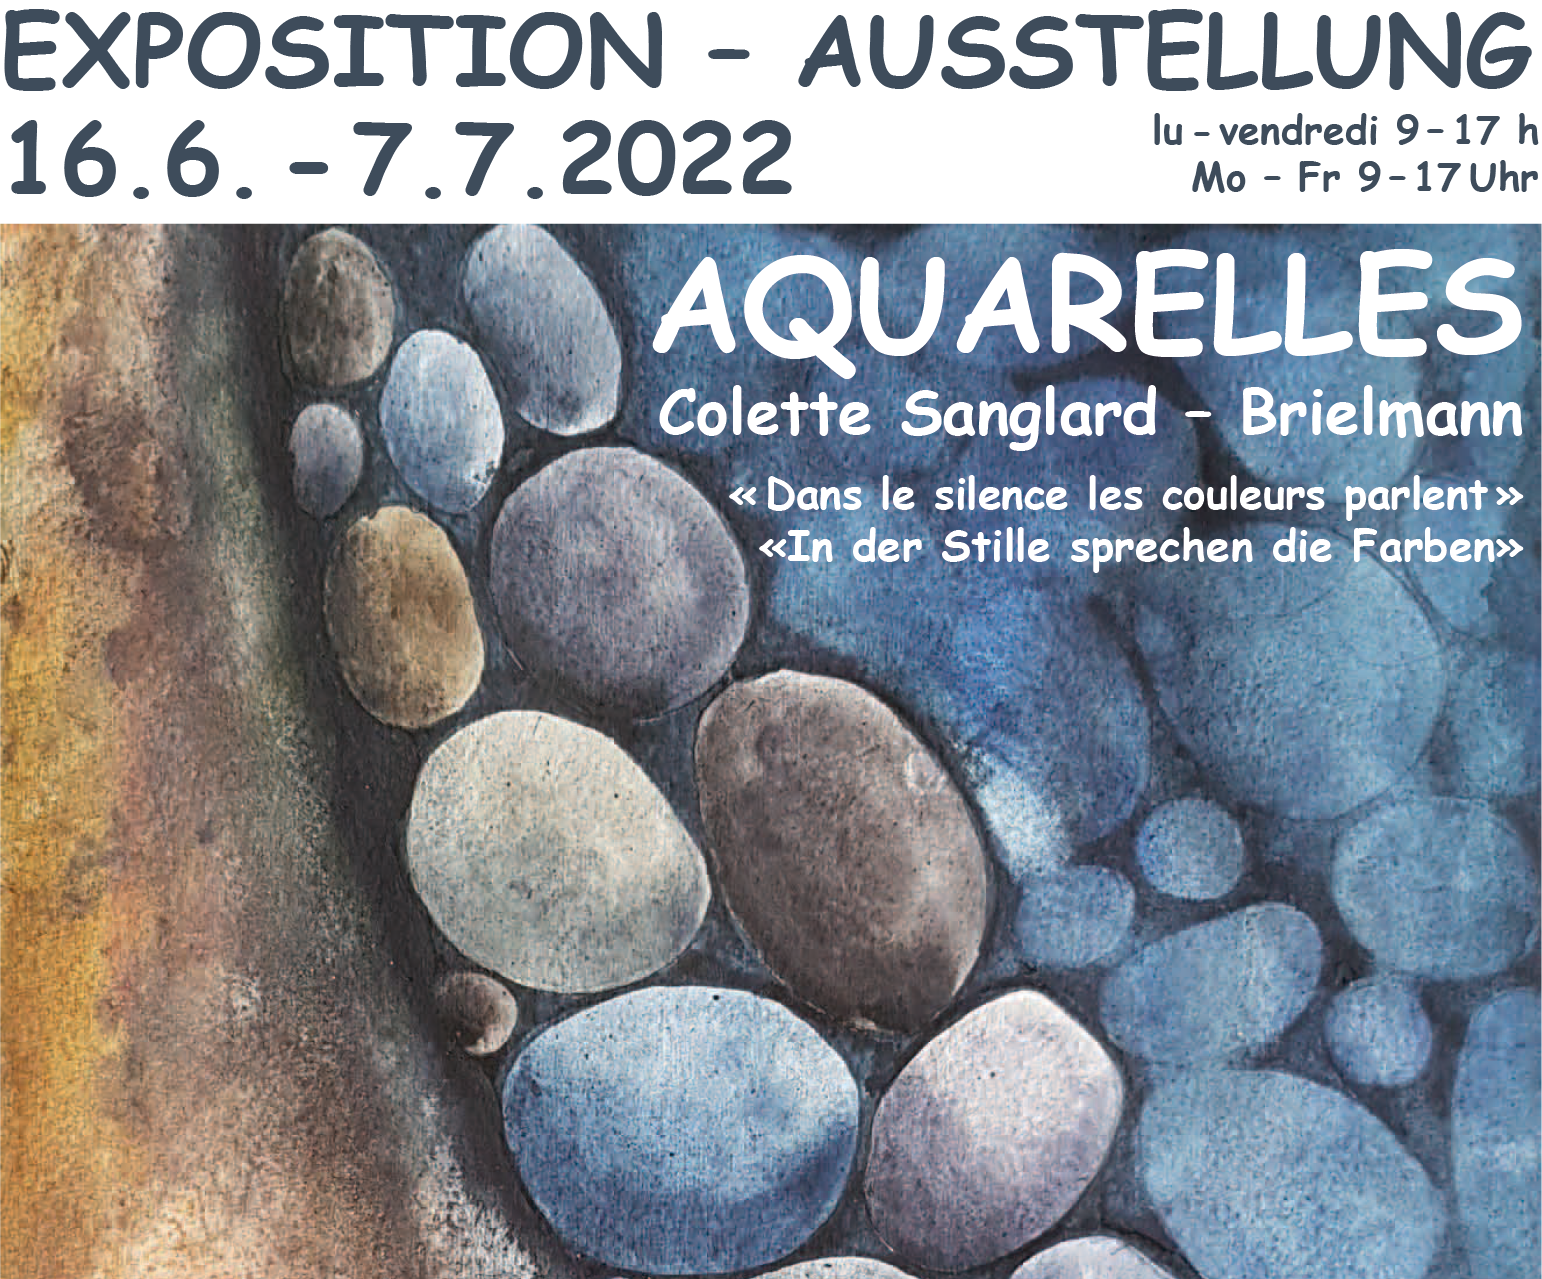 Exposition Aquarelles: Information und Sensibilisierung Gehörlosigkeit